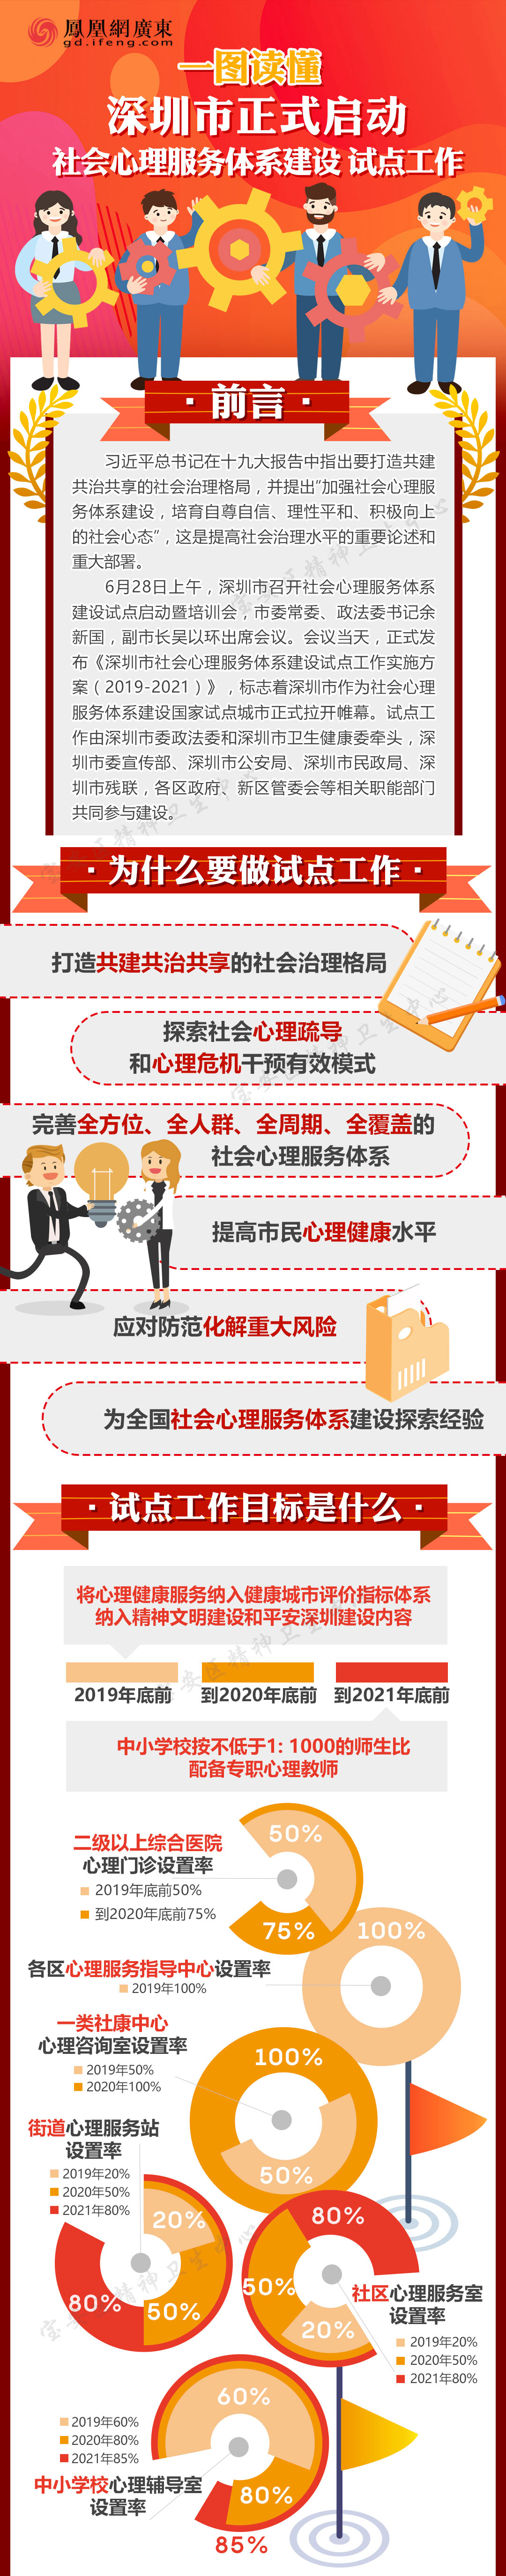 深圳市正式启动社会心理服务体系建设试点工作